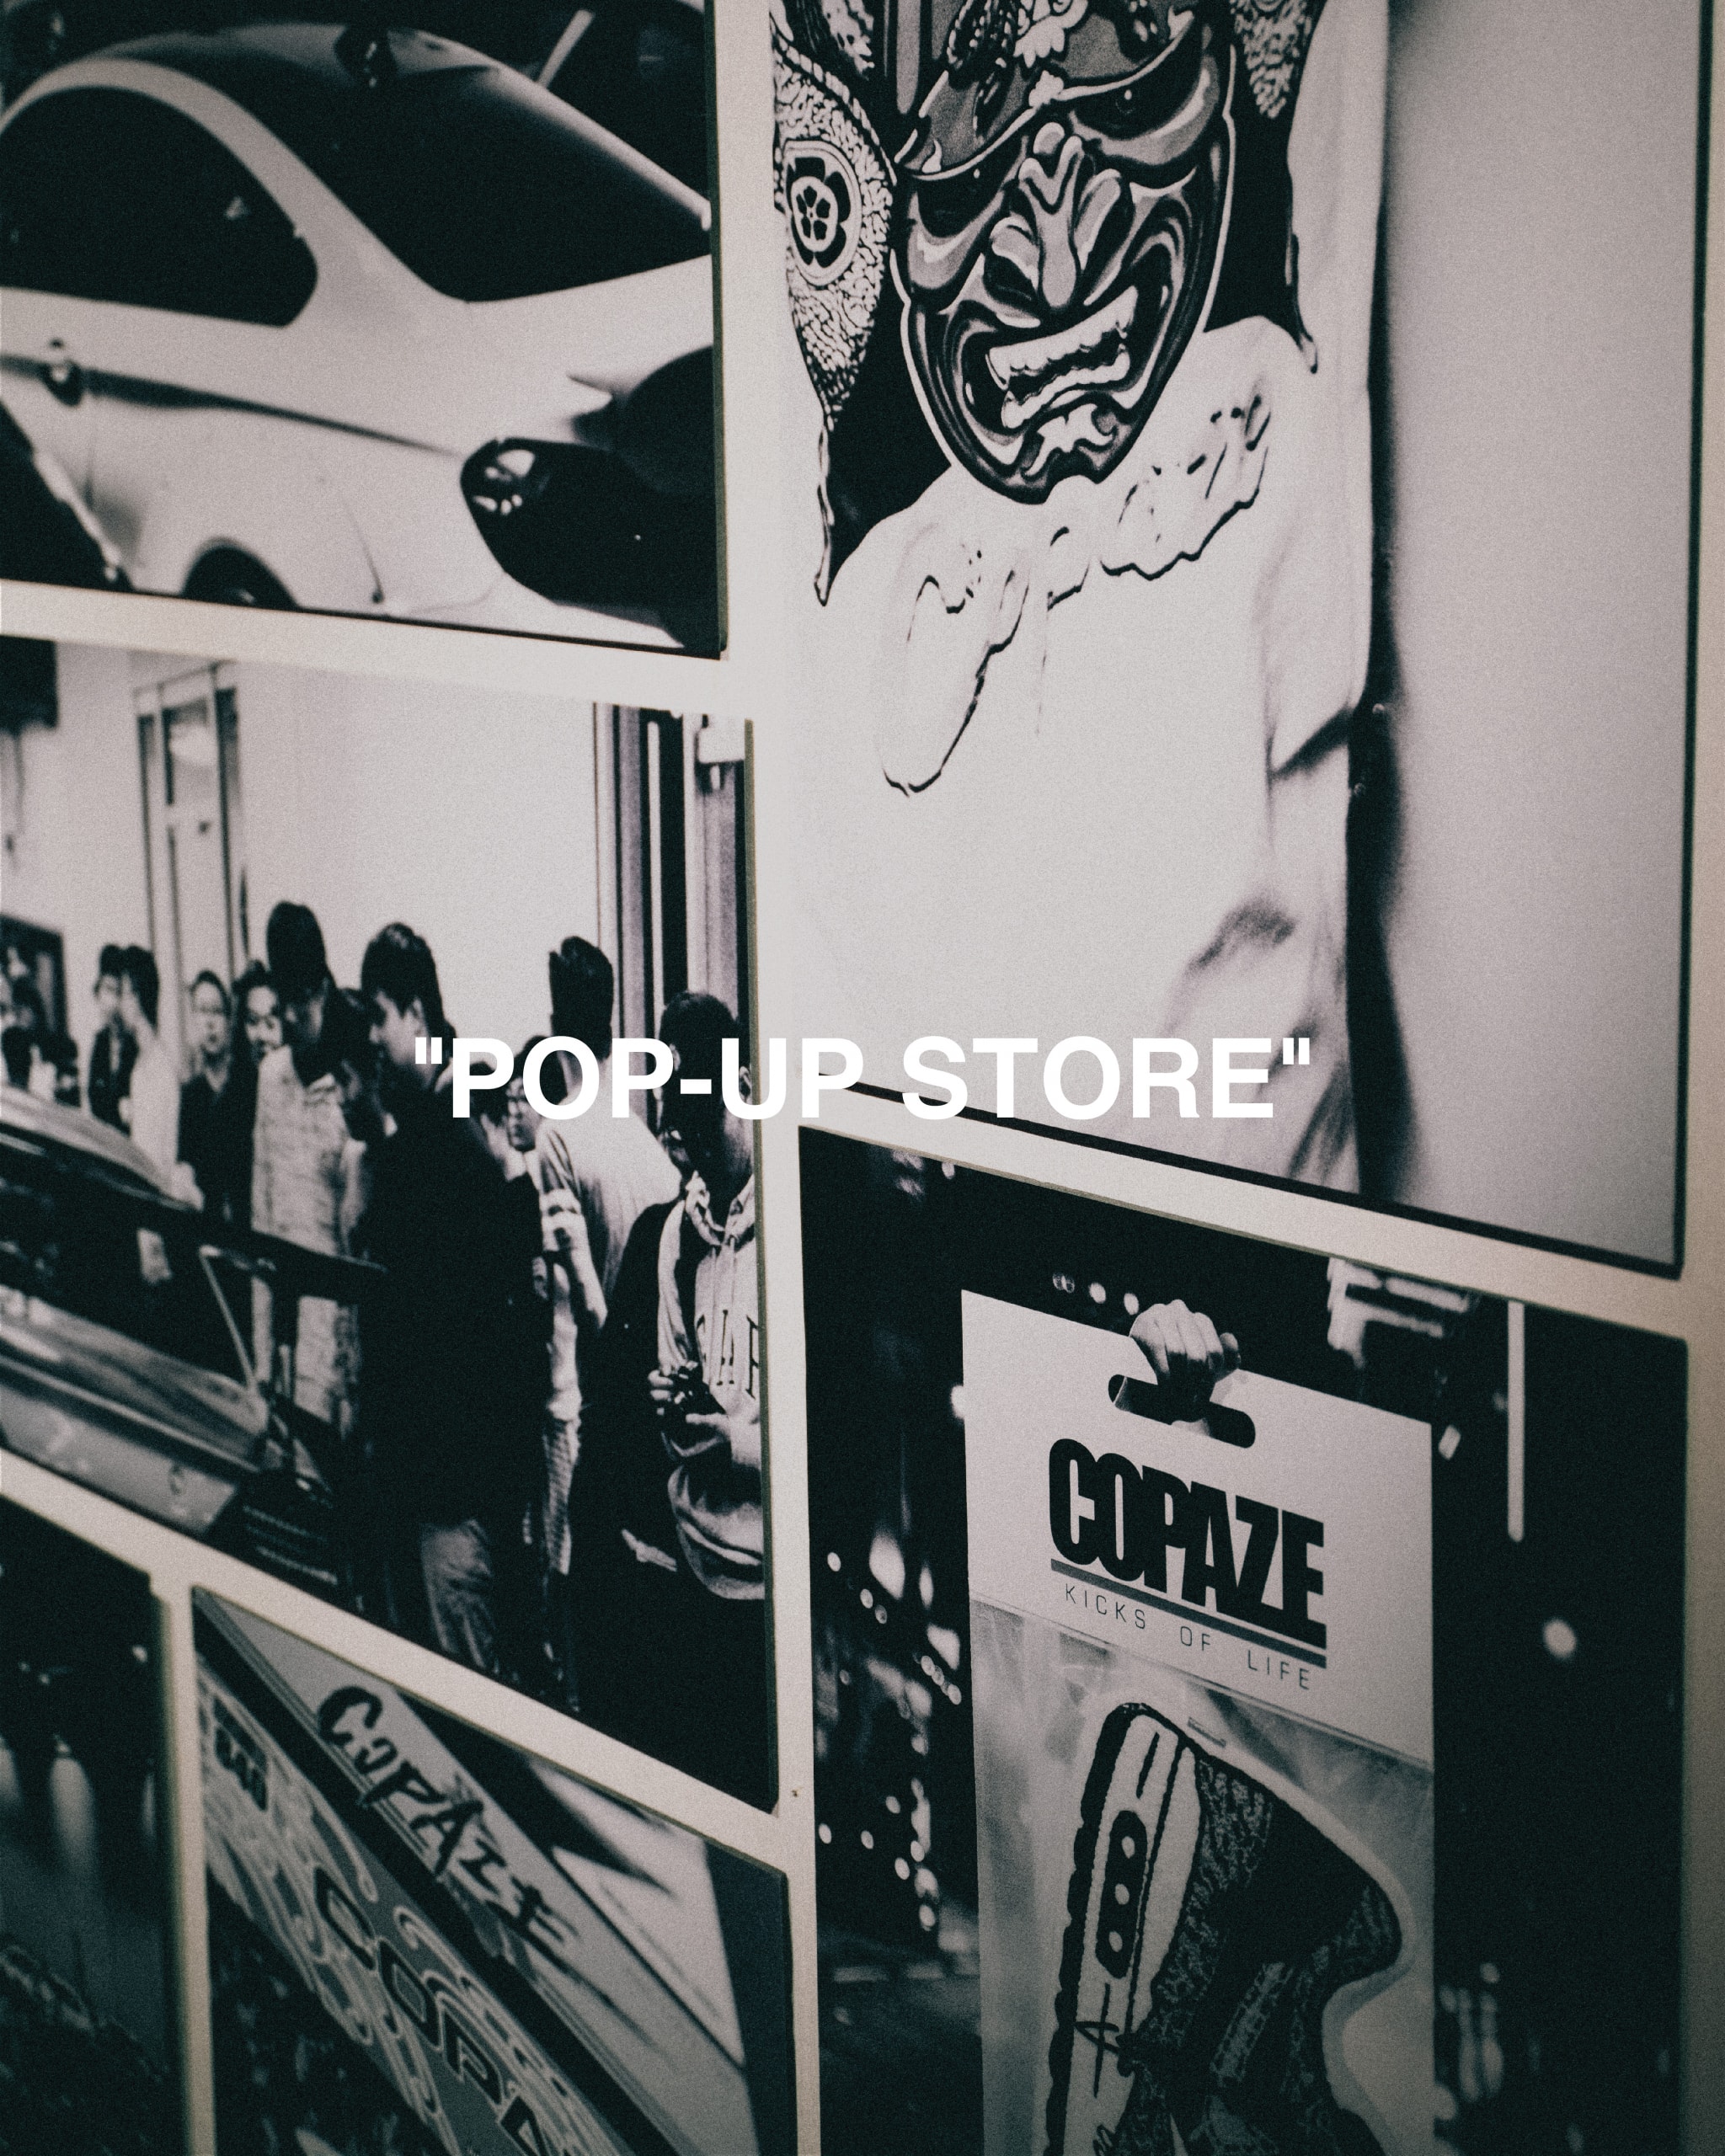 COPAZE 開設香港首個 POP-UP 期間限定店舖 